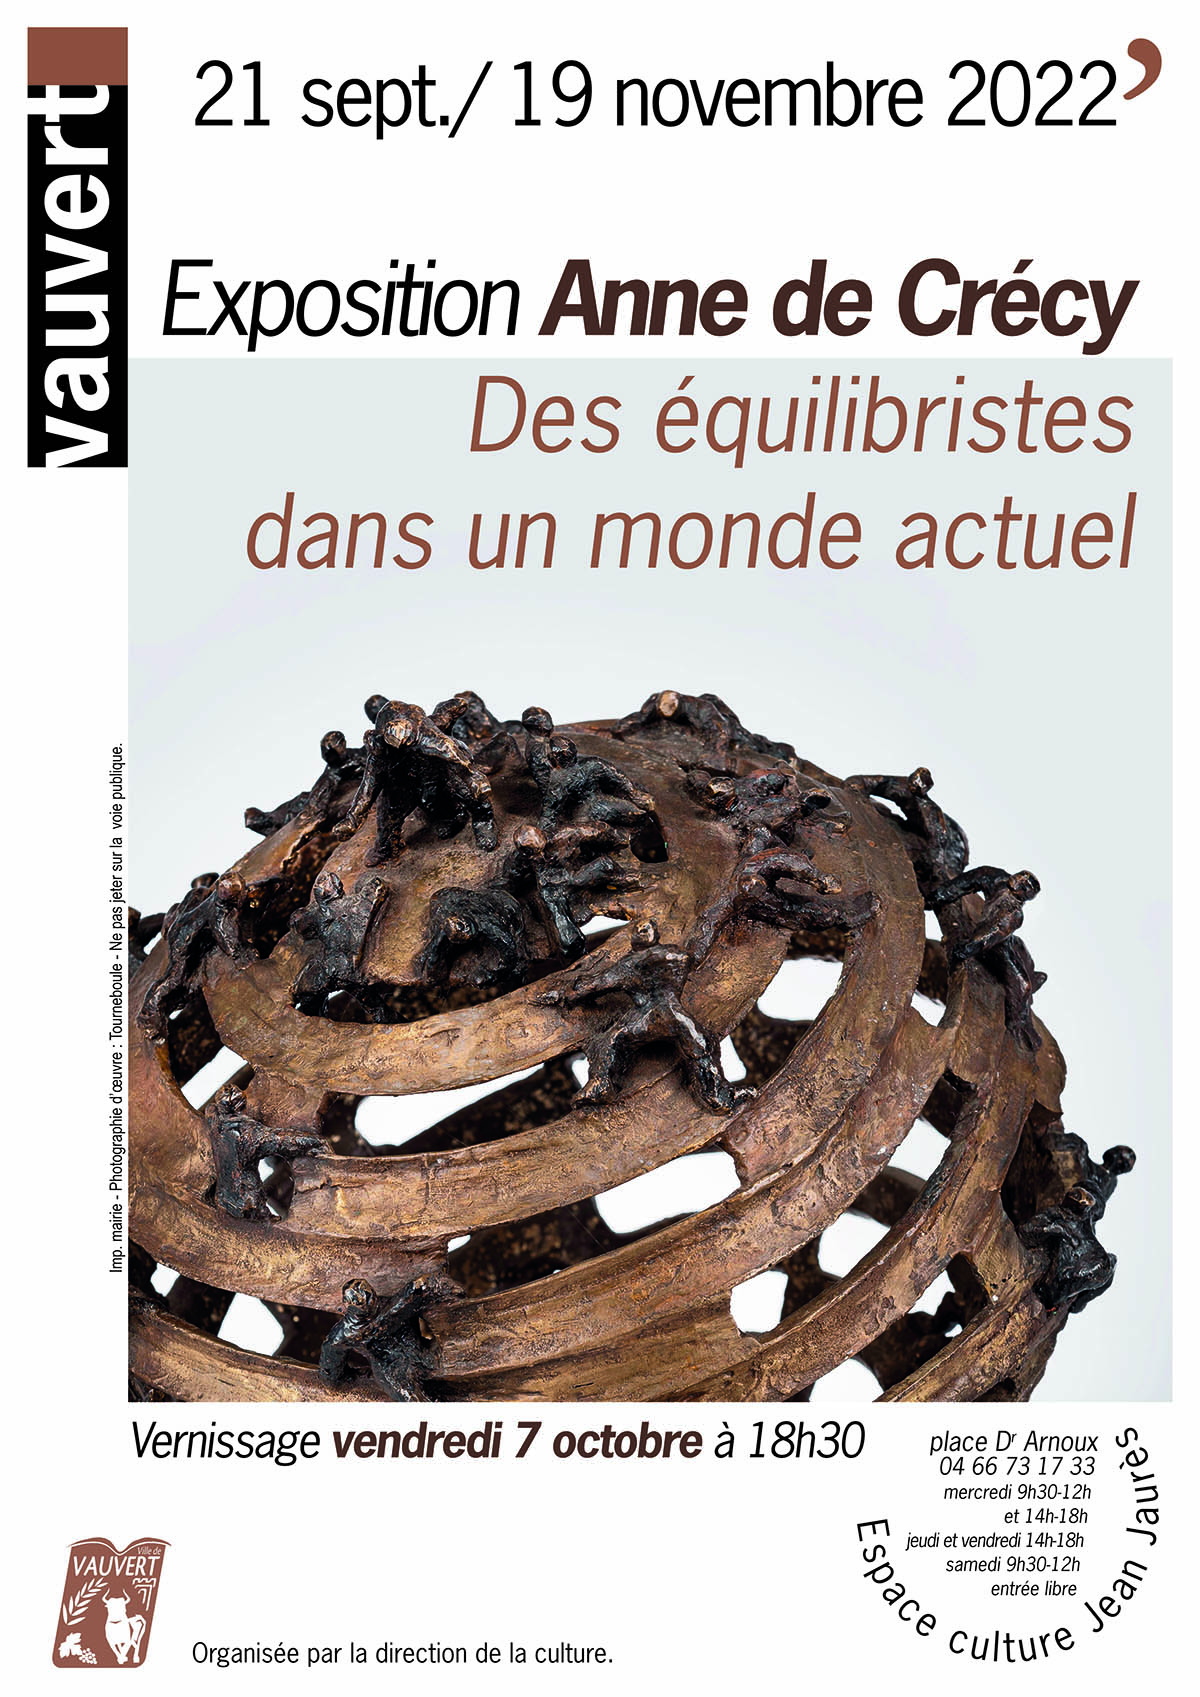 Exposition Anne de Crécy - Vauvert de septembre à novembre 2022